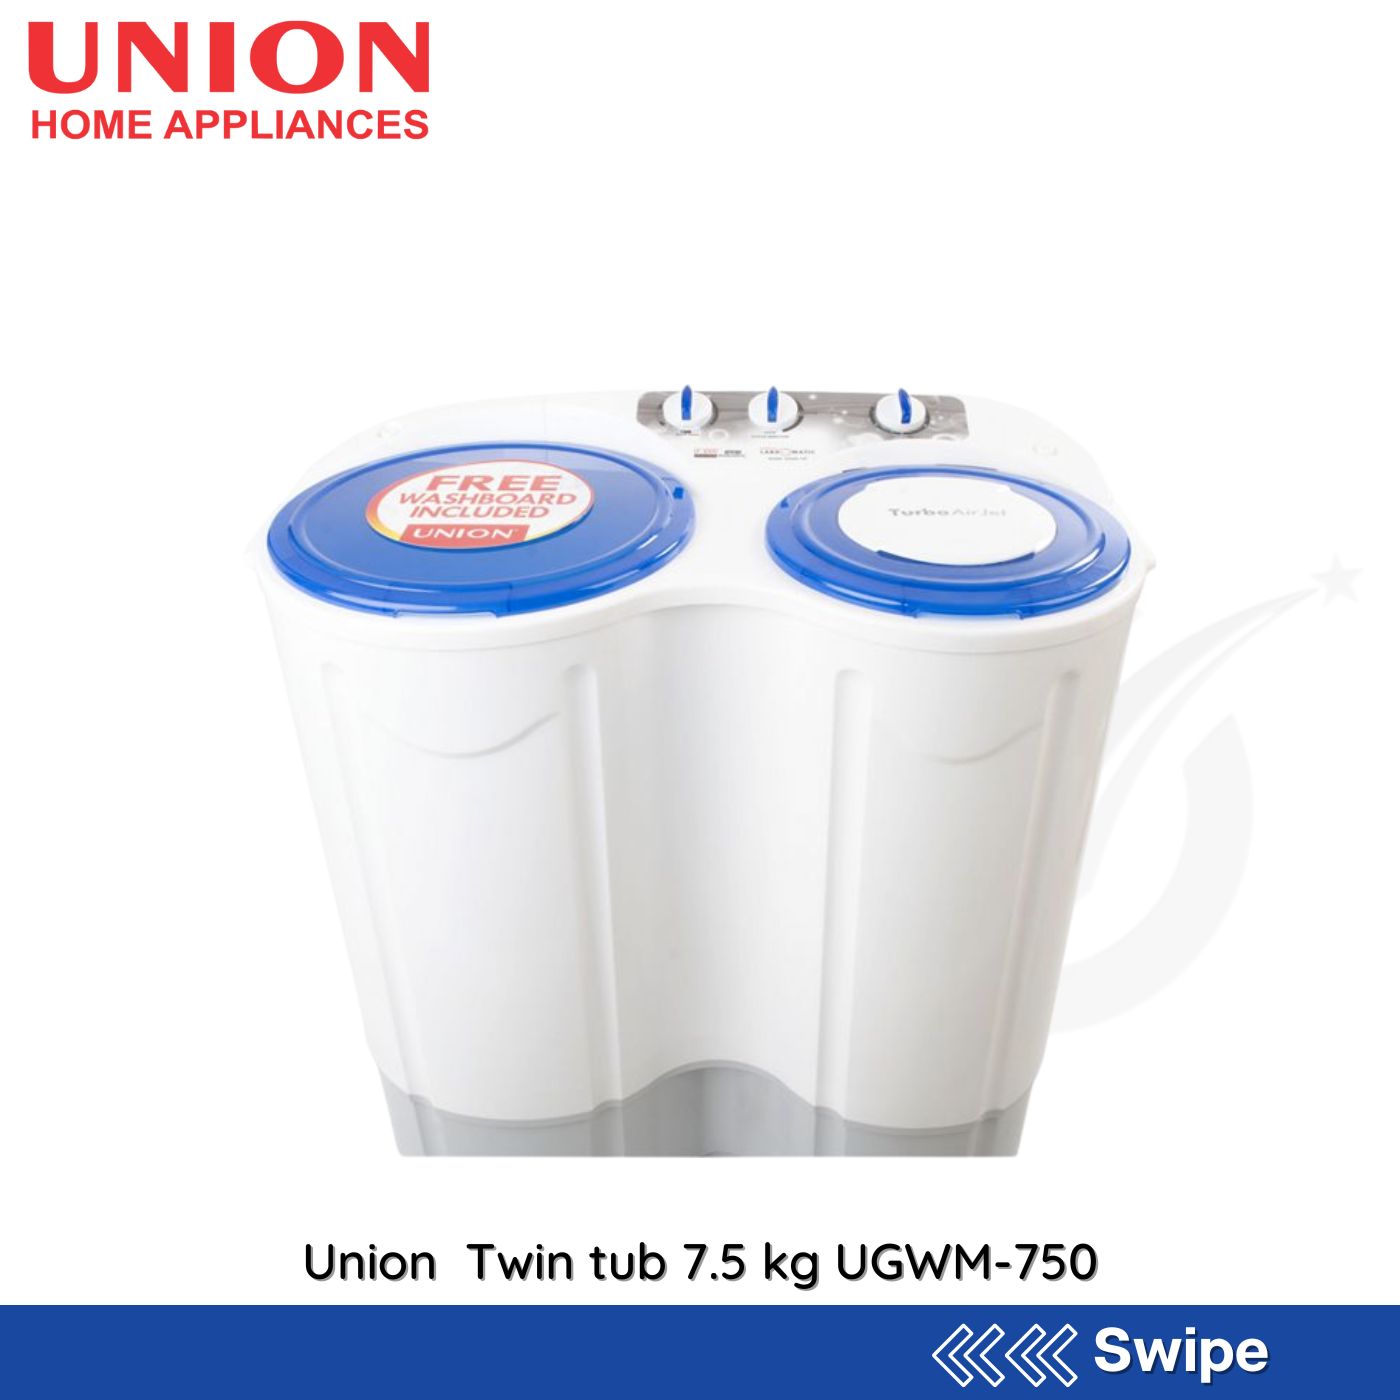 Union Twin tub 7.5 kg UGWM-750